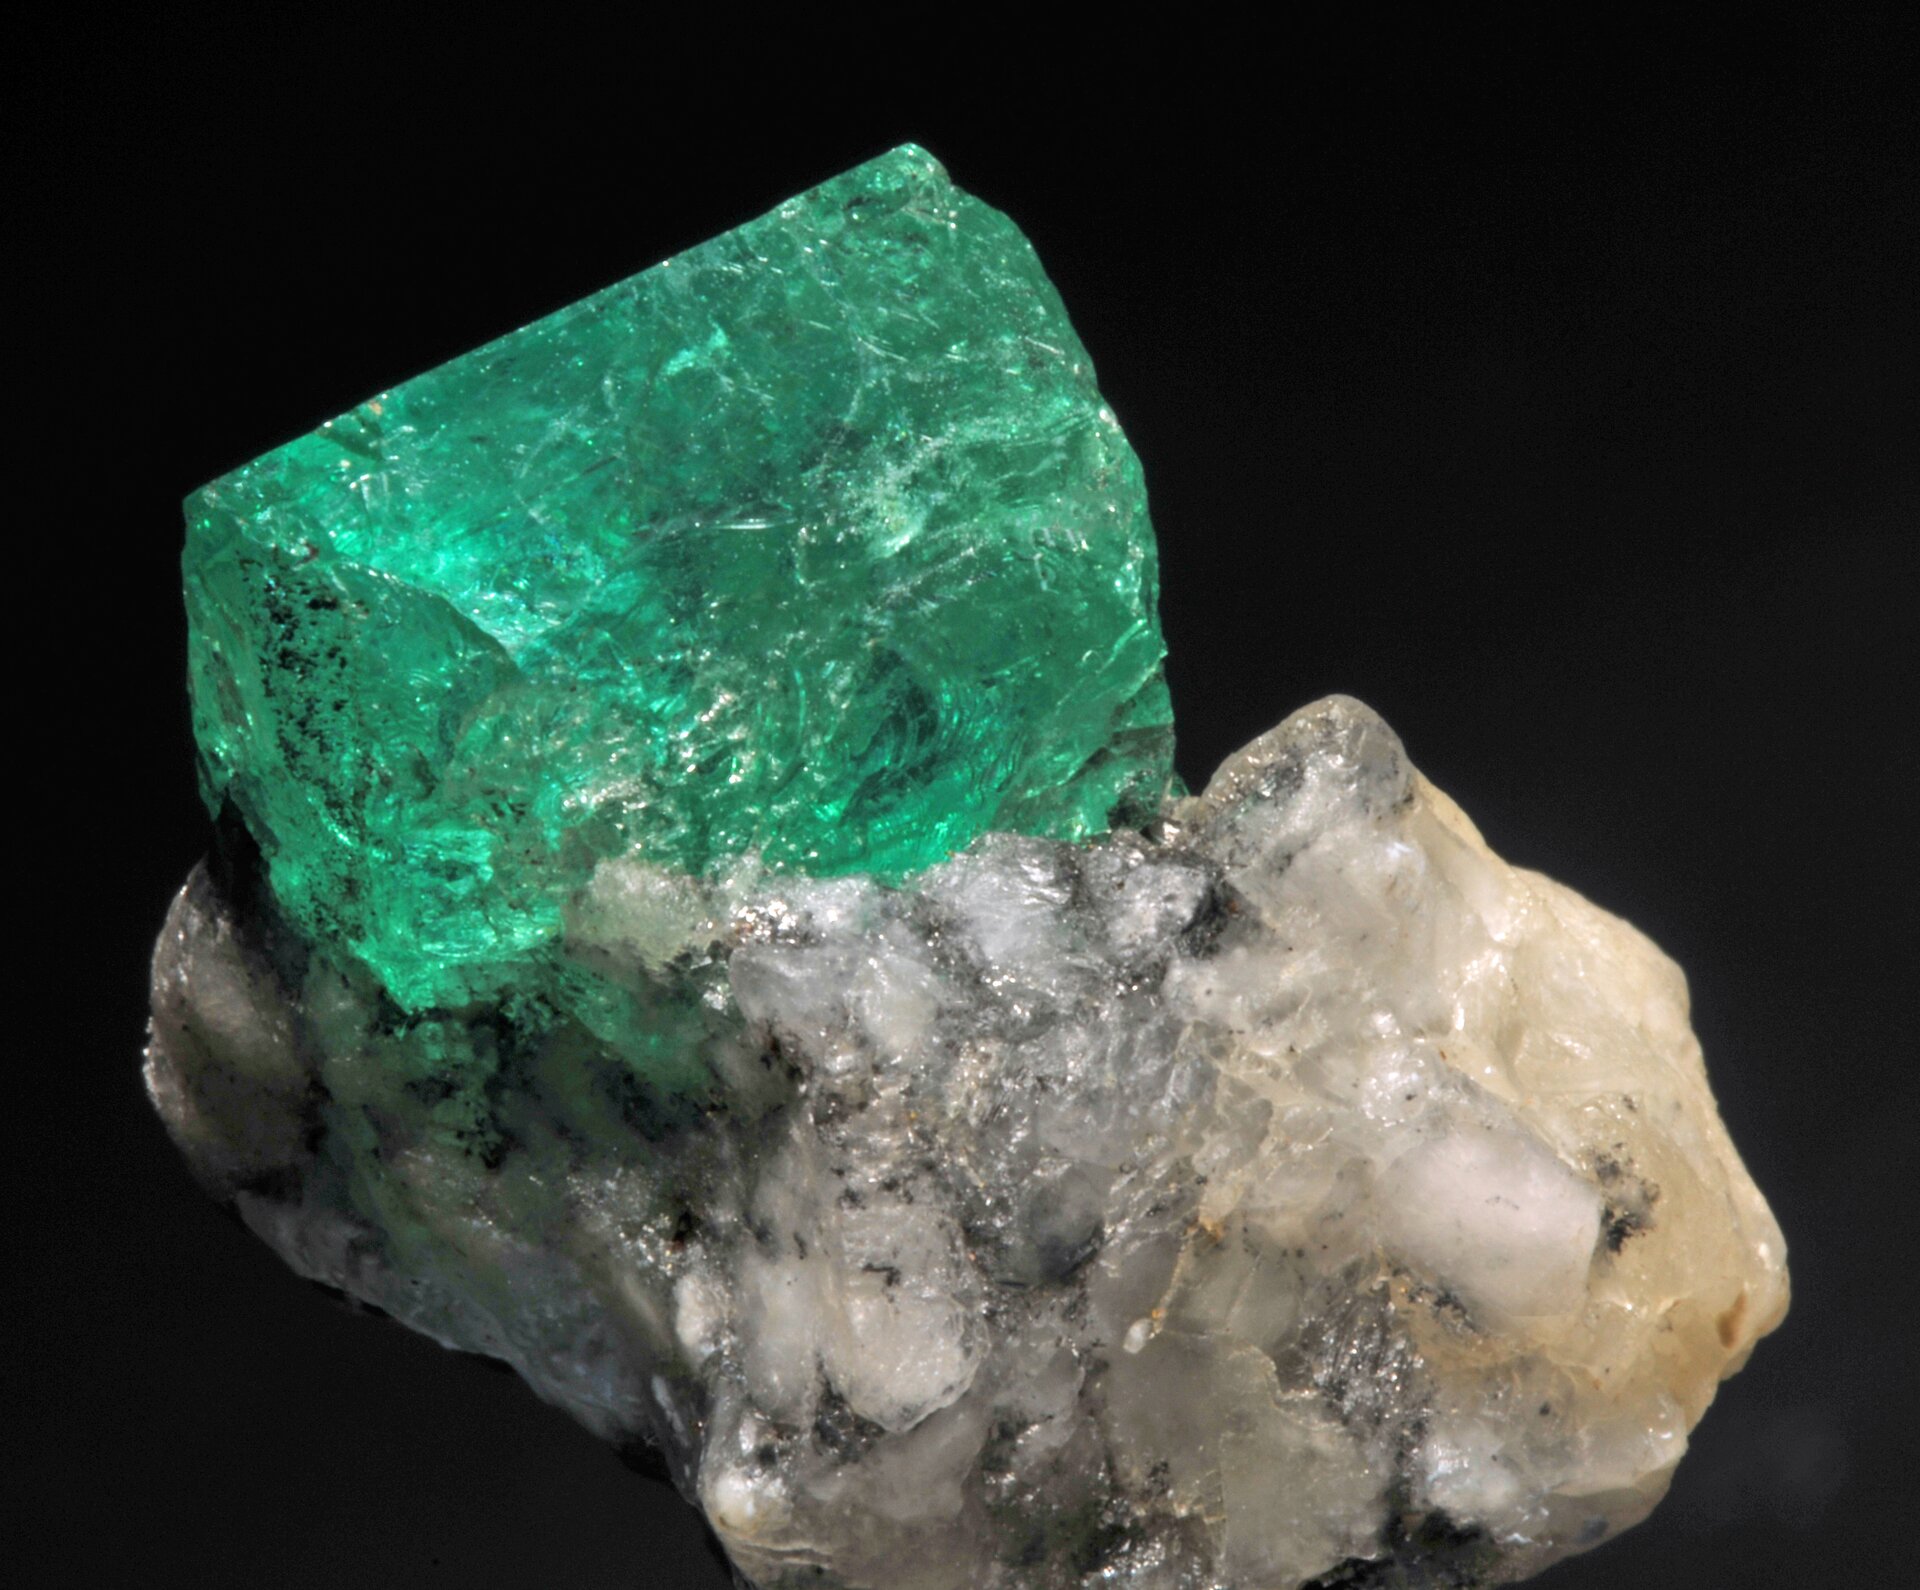 Zdjęcie przedstawia dwa złączone ze sobą minerały - szmaragd i kalcyt. Szmaragd - kryształ o zielonym zabarwieniu, przezroczysty. Kalcyt - biało-szary kamień.